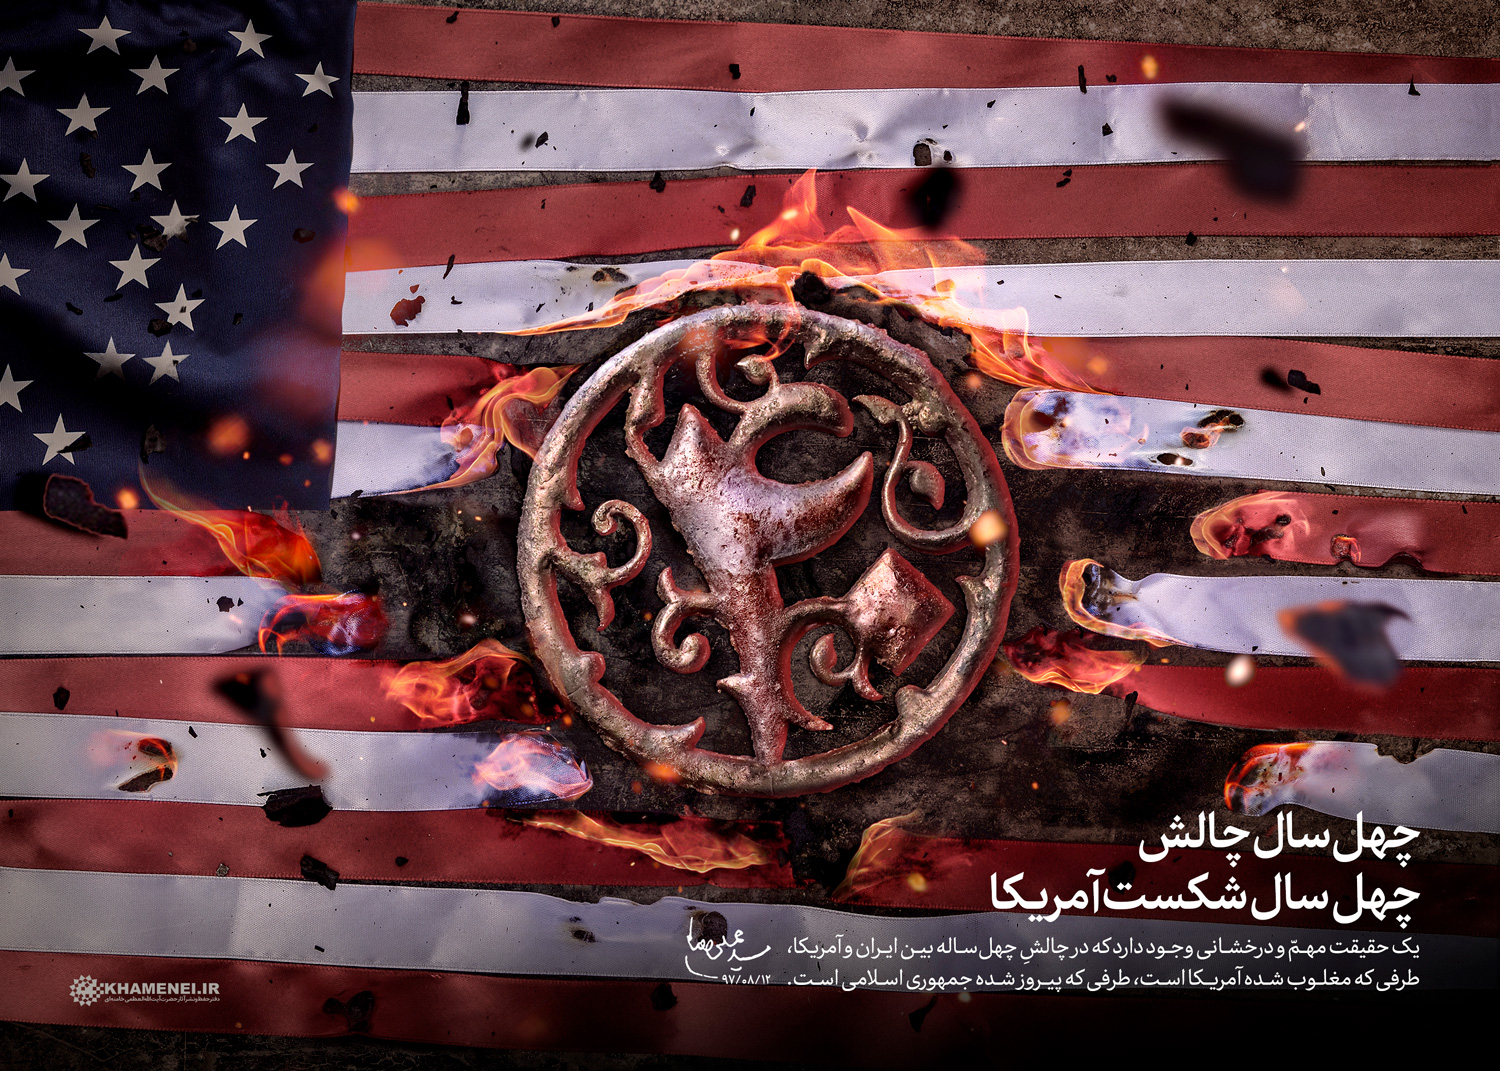 سخن نگاشت | چهل سال چالش، چهل سال پیروزی ایران، چهل سال شکست آمریکا